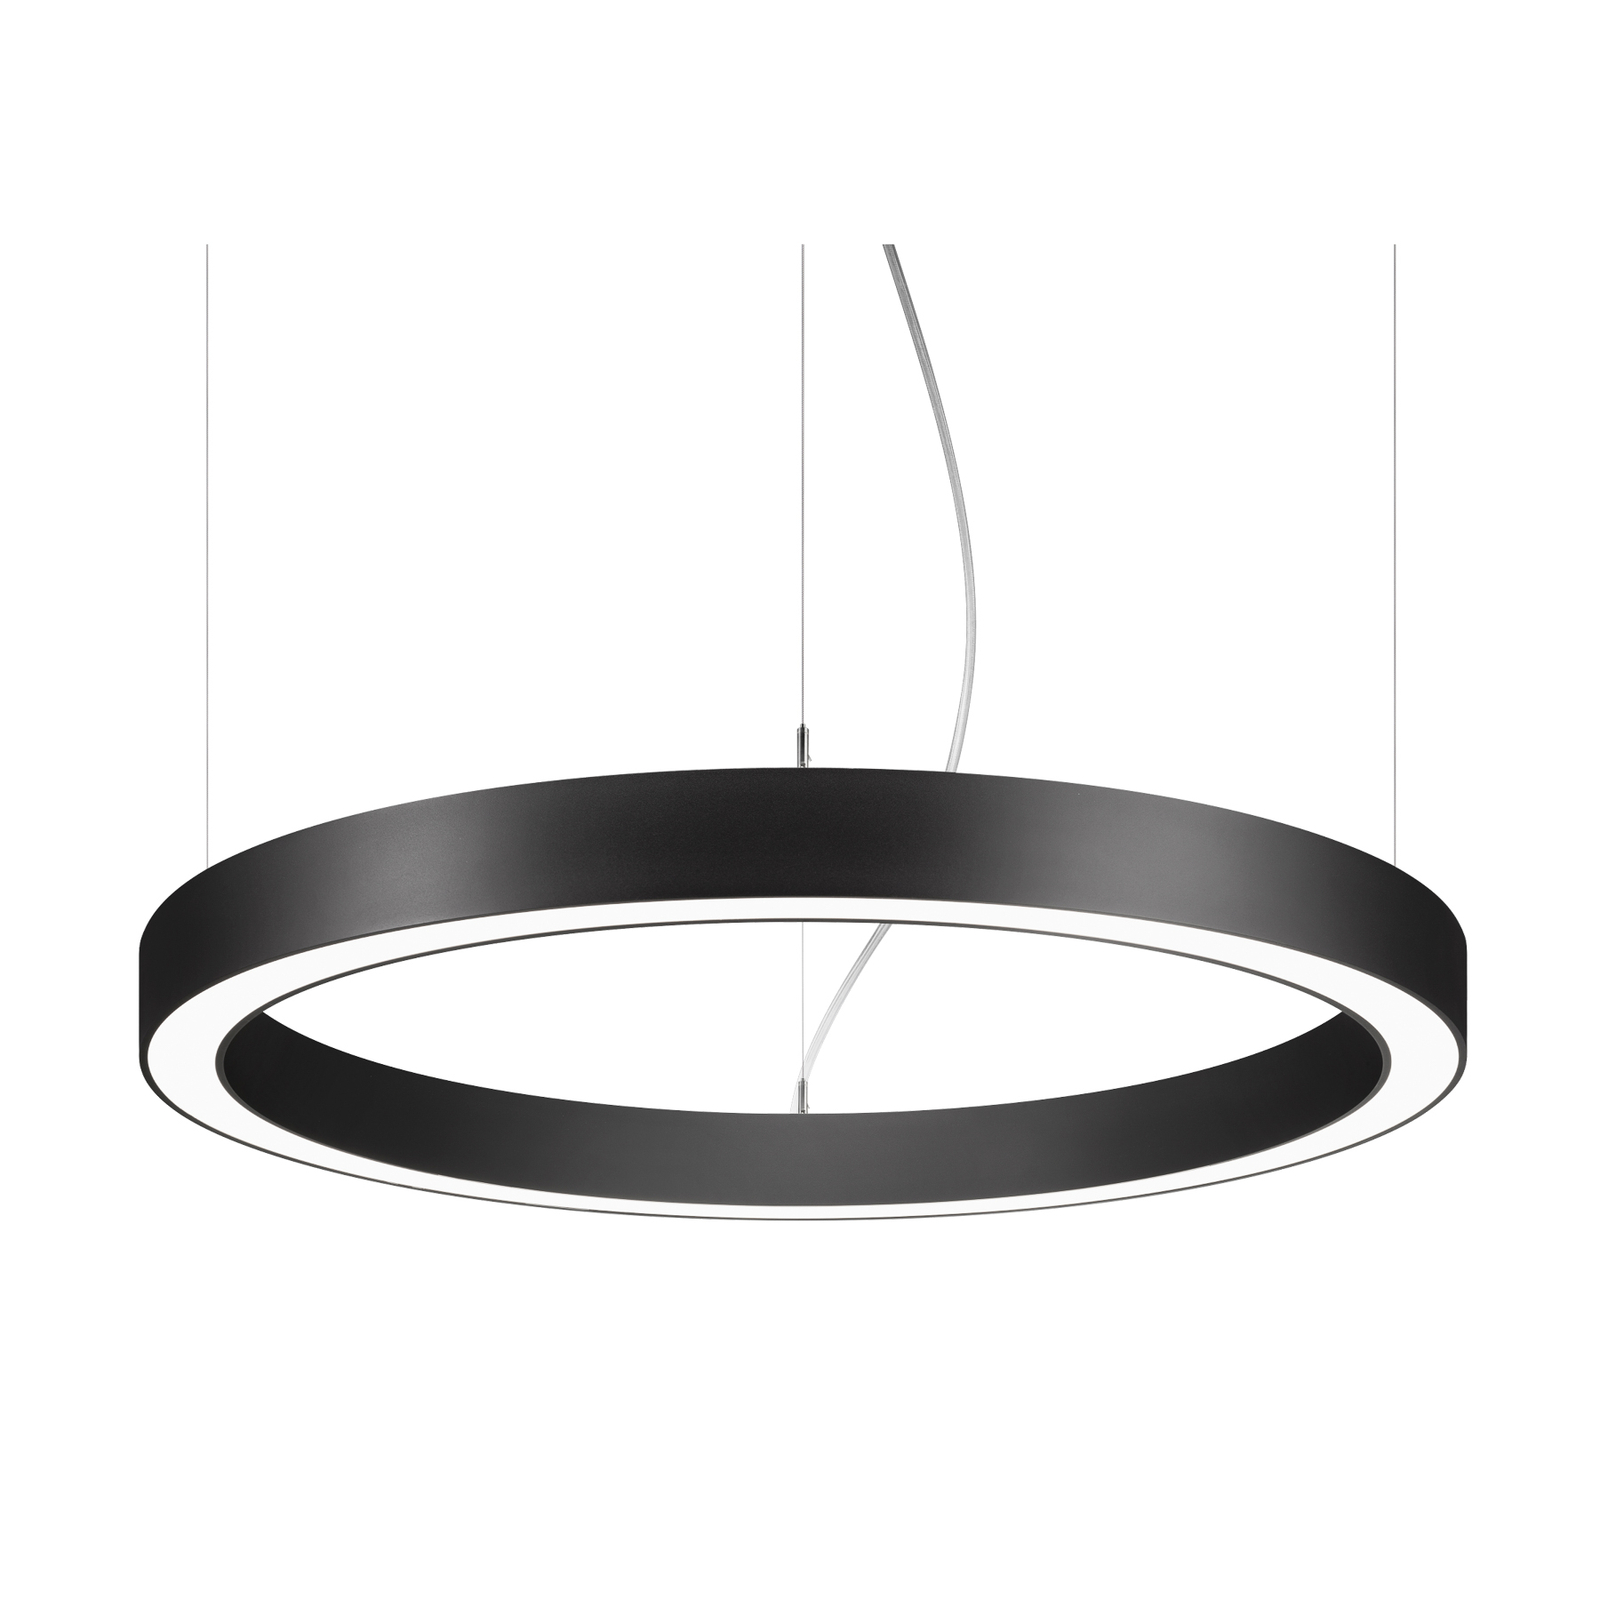 BRUMBERG Biro Circle Ring10 priamy Ø 60 cm zapnutý/vypnutý čierny 830